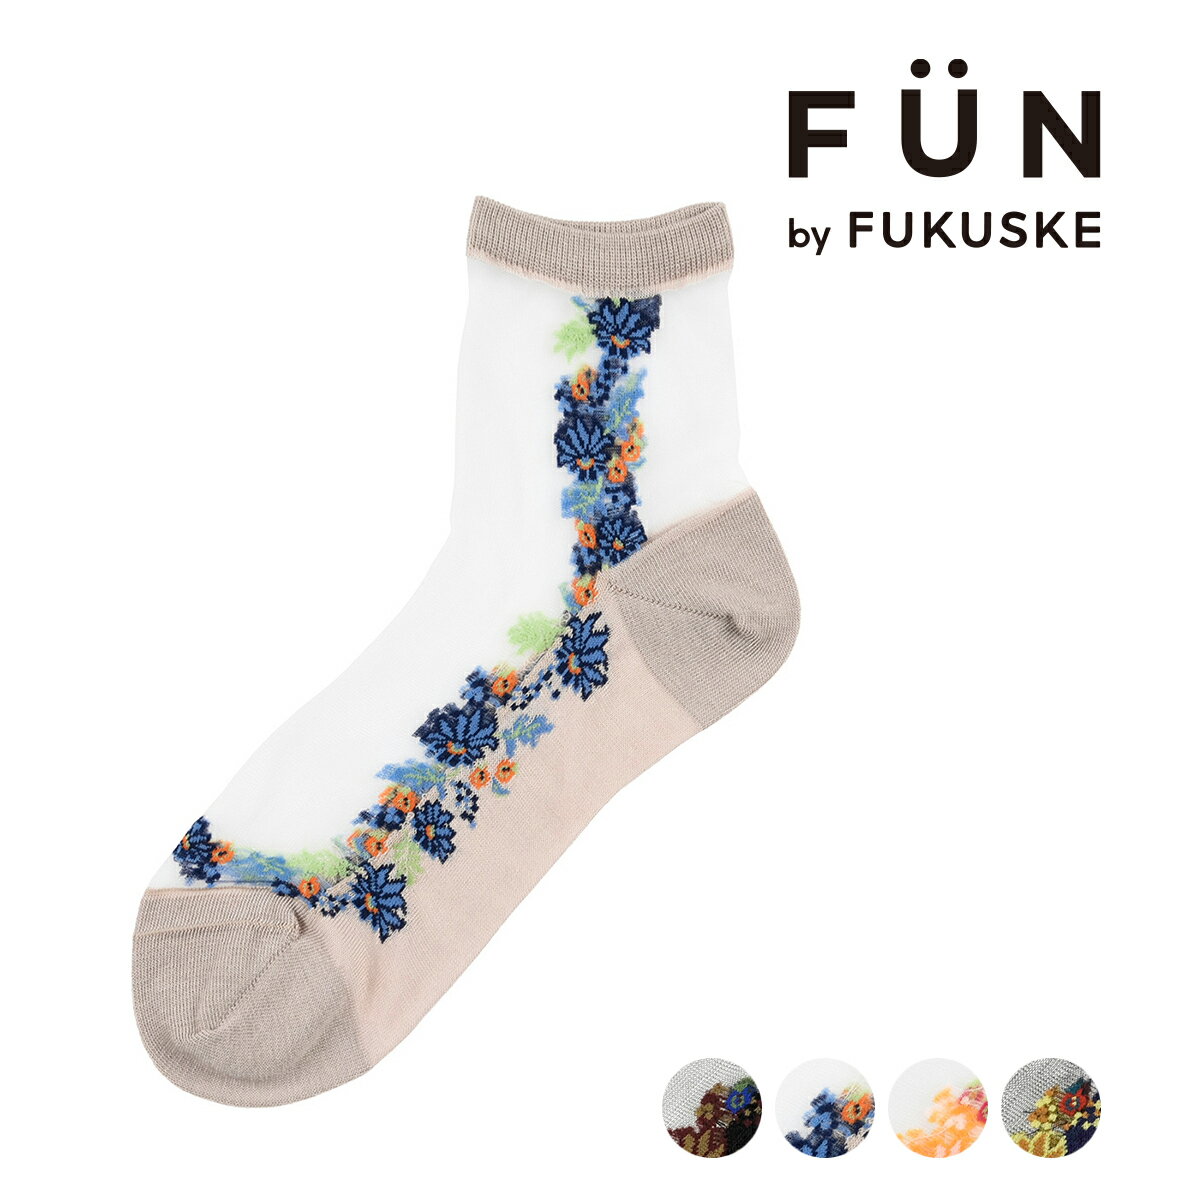 fukuske FUN F ԕ \bNX N[ eOX VA[(3162-65M)^tNXPt@ifukuske FUNj